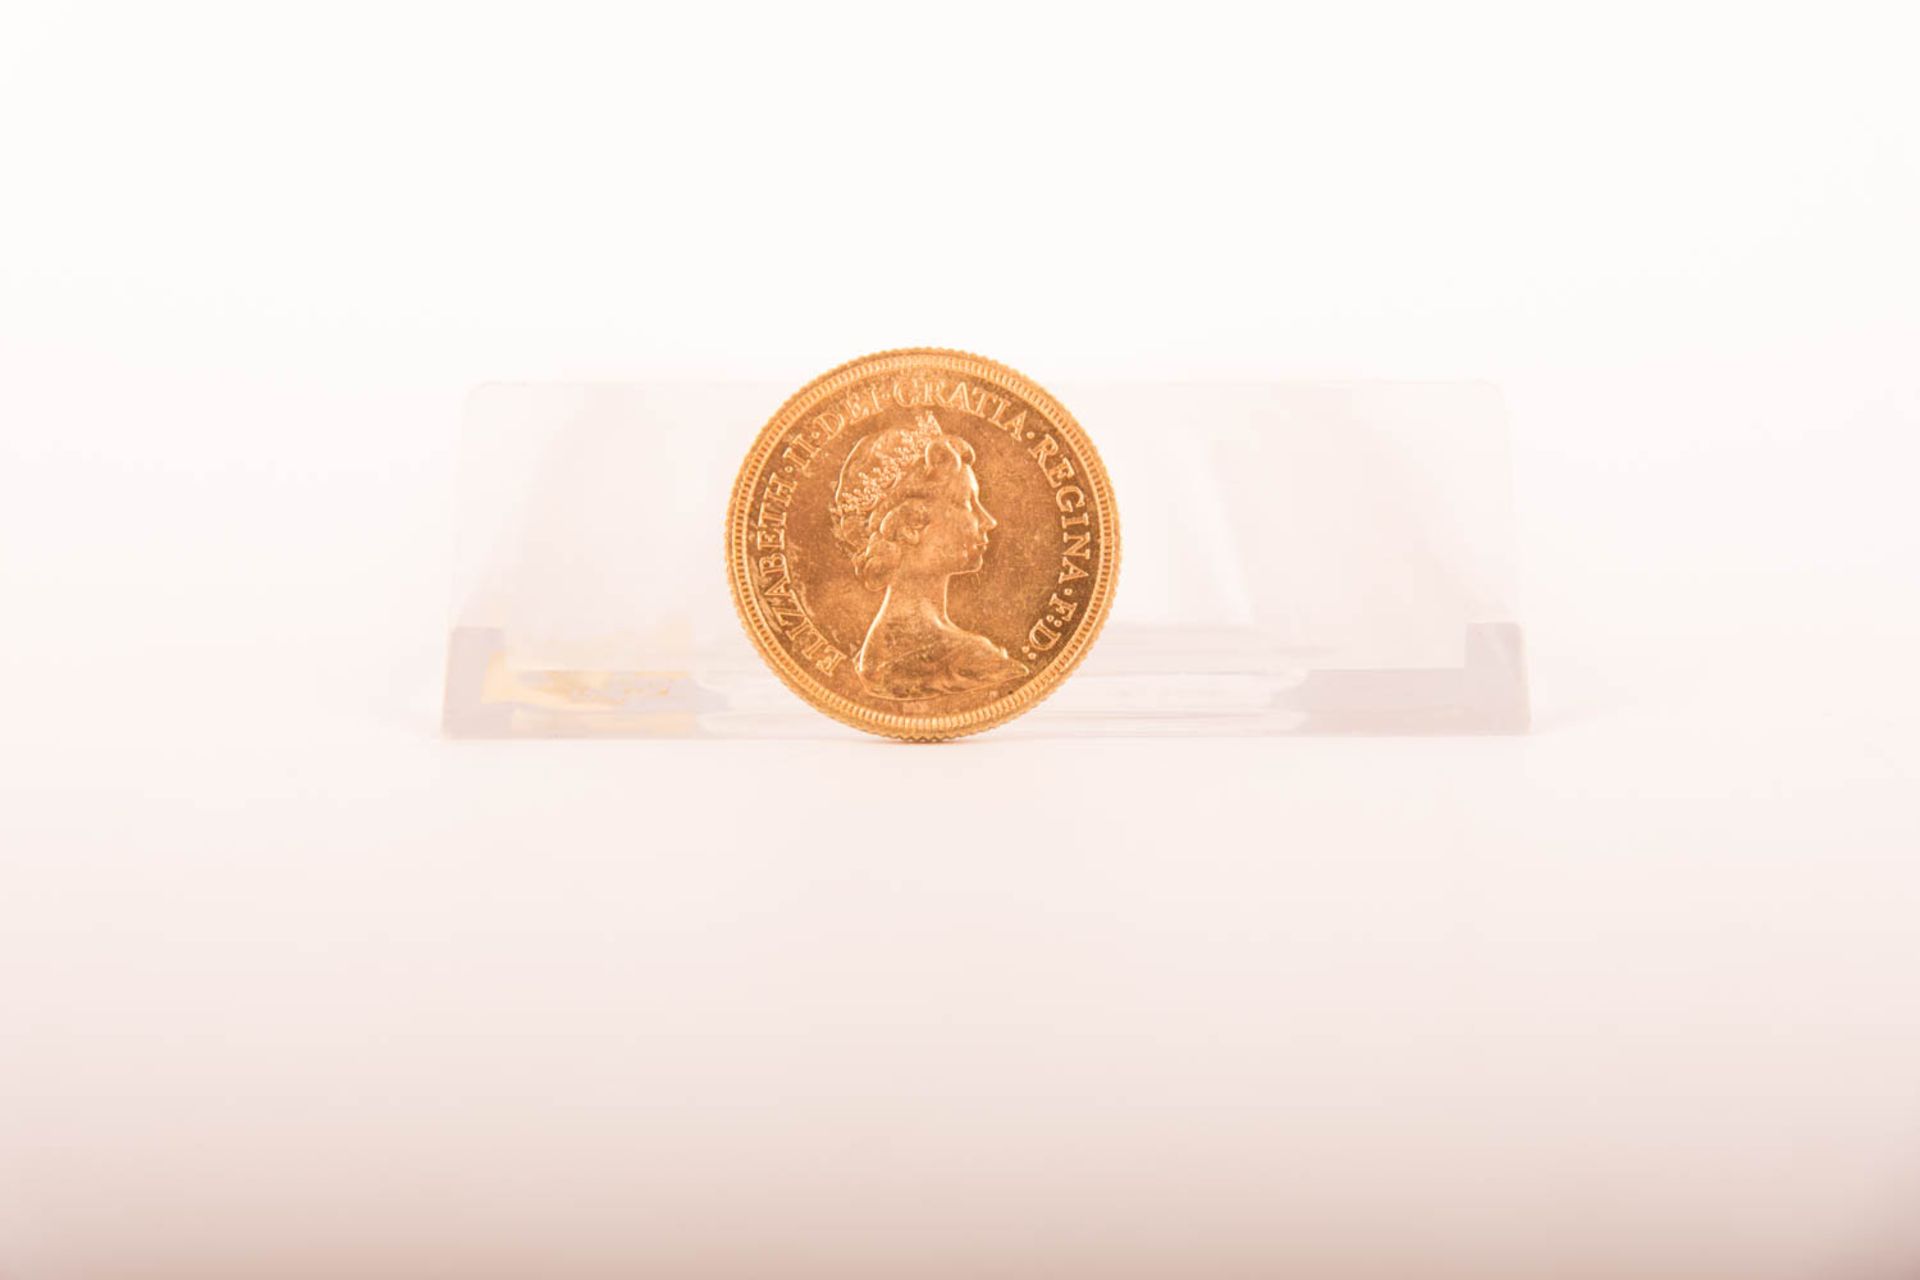 Konvolut von 4 Australien 1 Sovereign Goldmünzen. 1911 - 1912 - 1958 - 1974 - Image 5 of 10